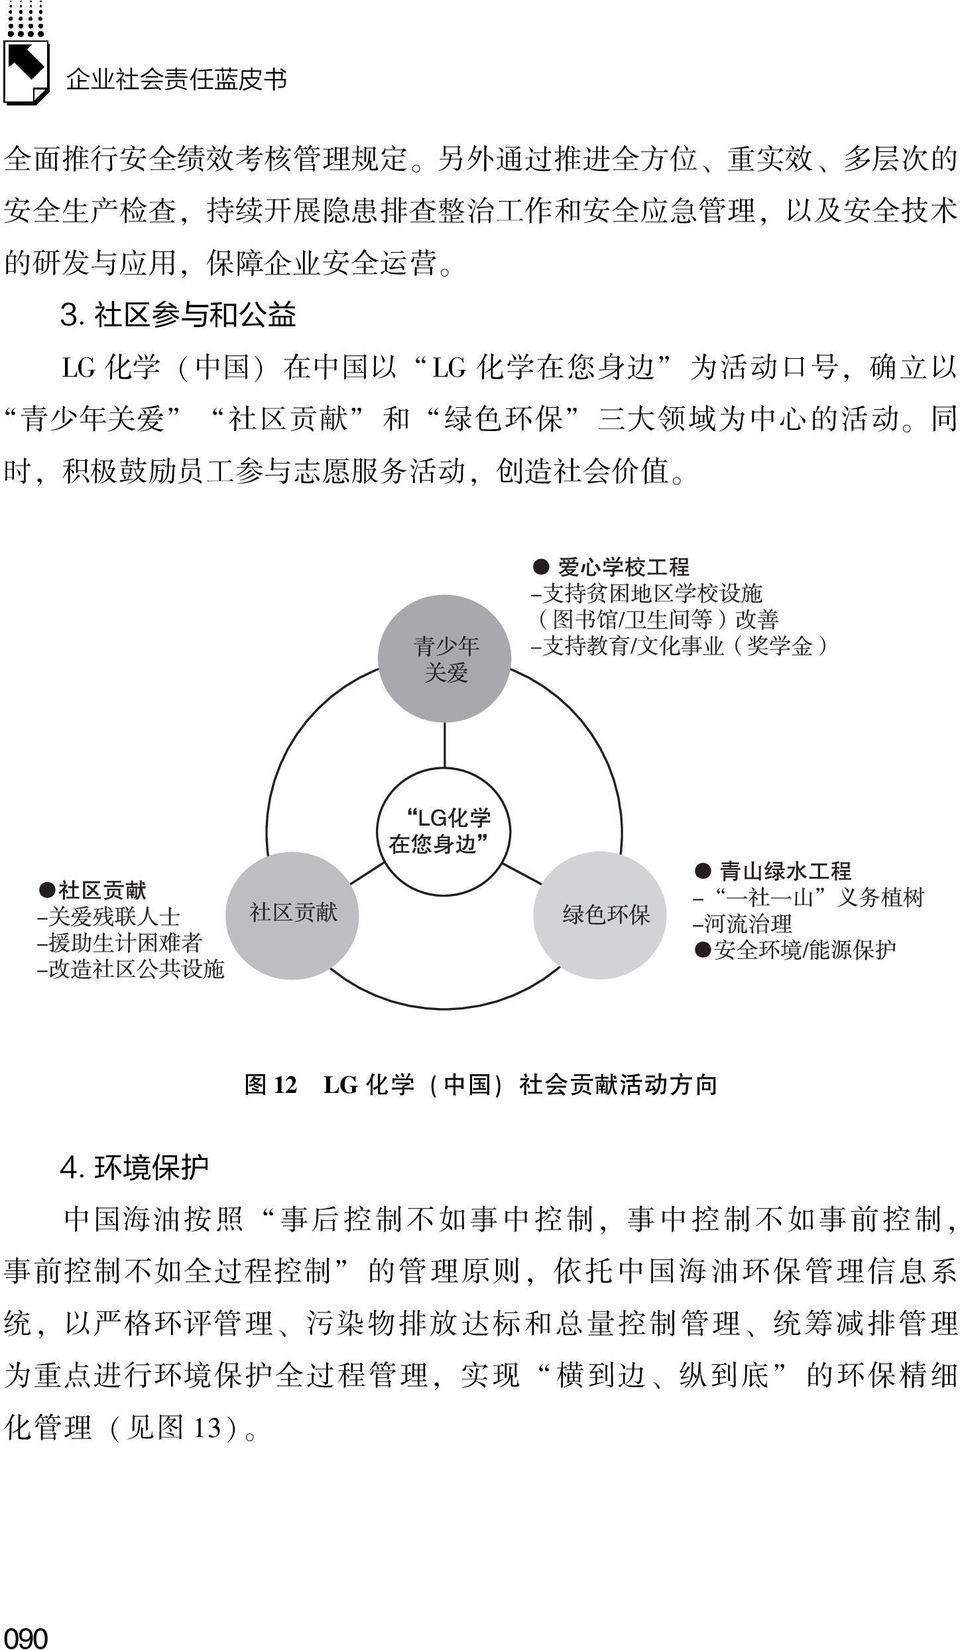 愿 服 务 活 动, 创 造 社 会 价 值 图 12 LG 化 学 ( 中 国 ) 社 会 贡 献 活 动 方 向 4 环 境 保 护 中 国 海 油 按 照 事 后 控 制 不 如 事 中 控 制, 事 中 控 制 不 如 事 前 控 制, 事 前 控 制 不 如 全 过 程 控 制 的 管 理 原 则,